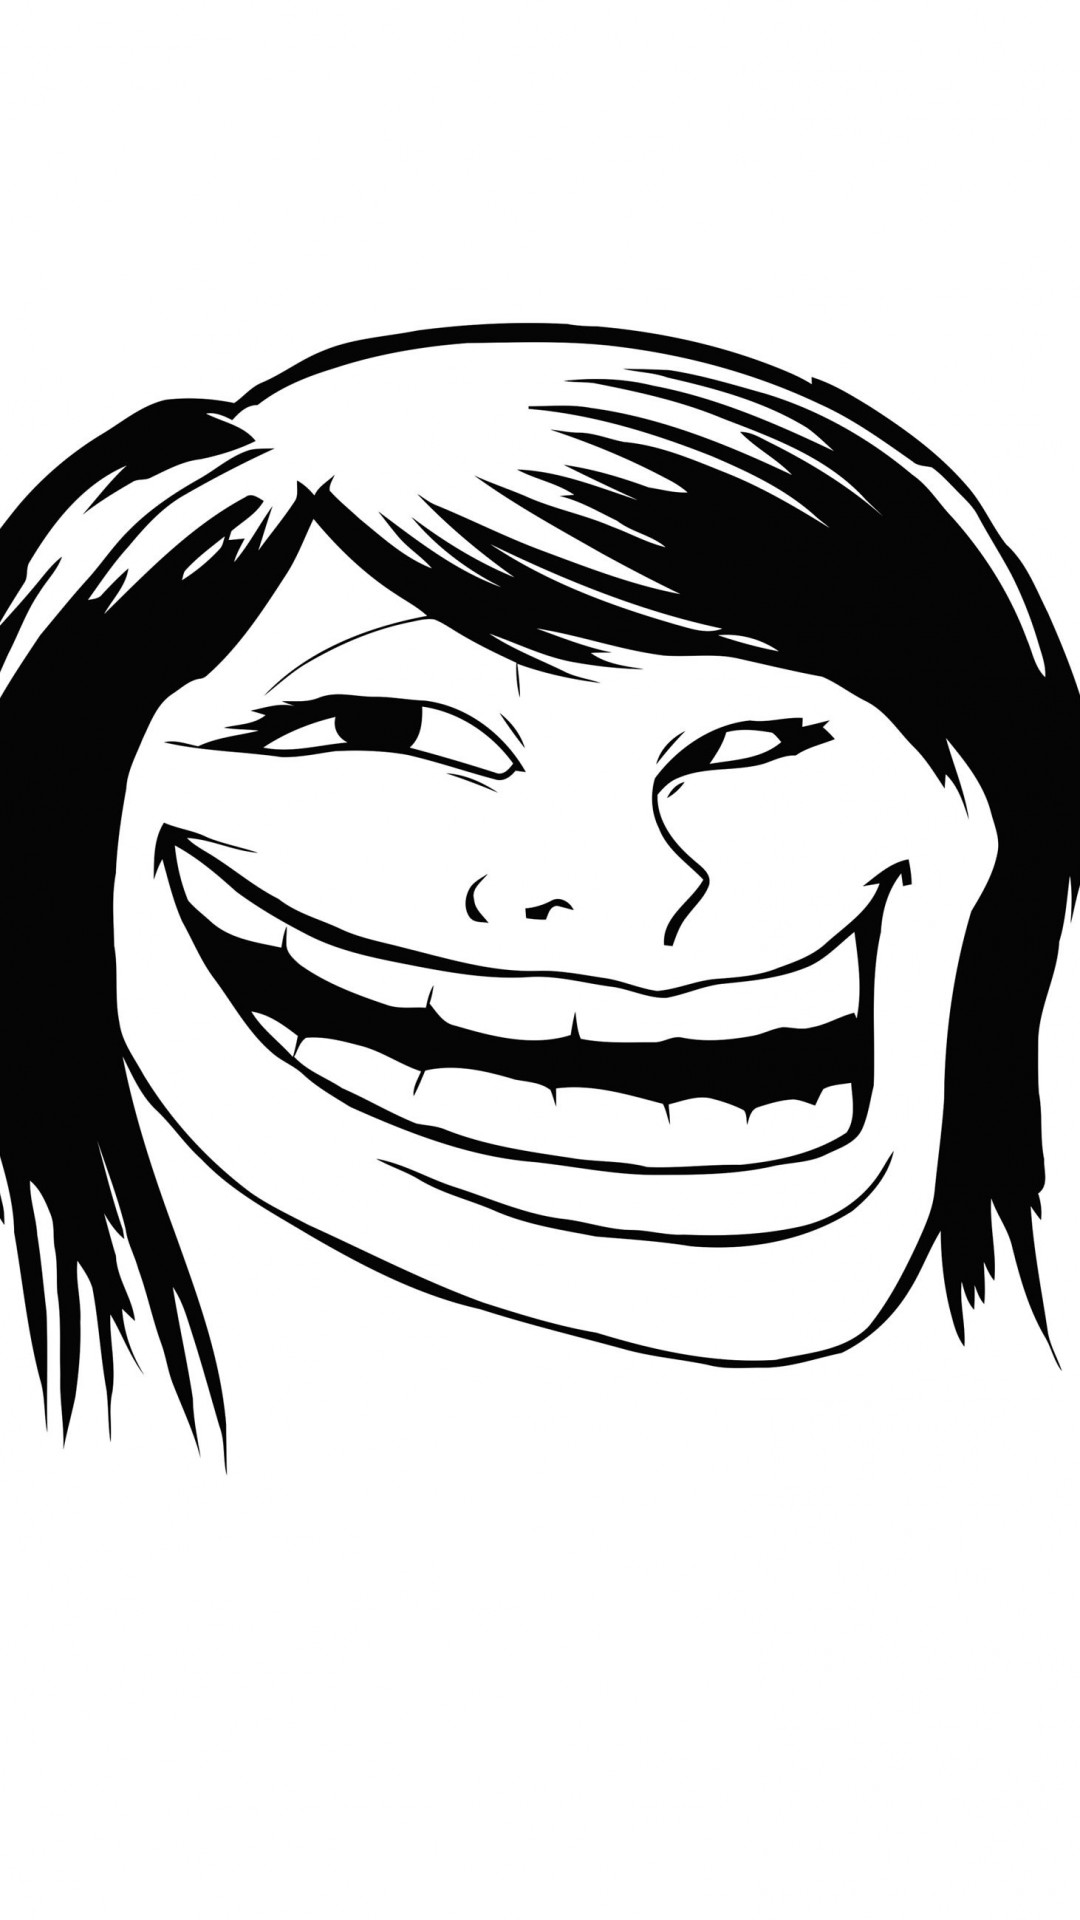 Female Troll Face Meme Wallpaper for HTC One